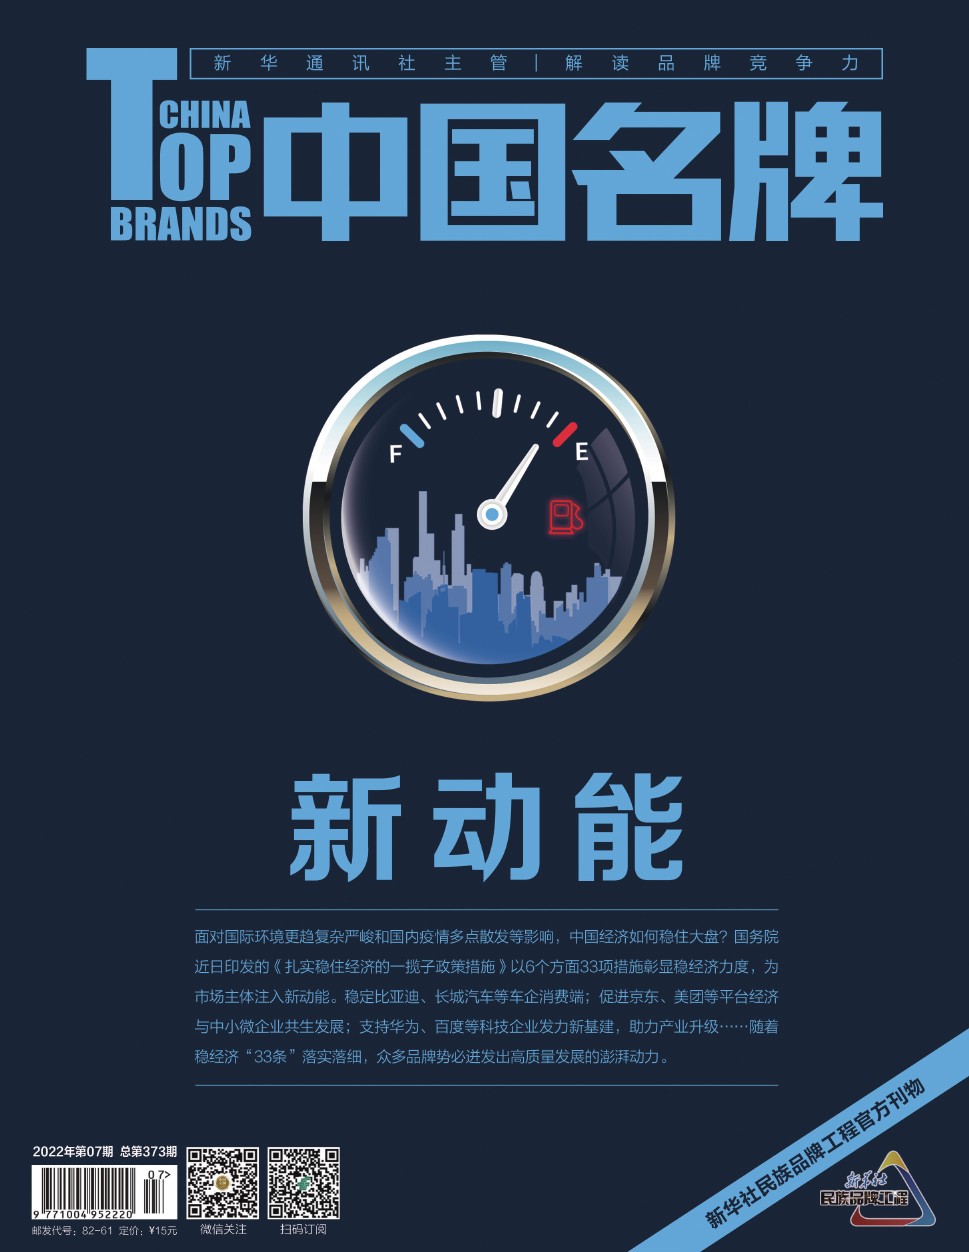 《中国名牌》电子杂志2022年第7期